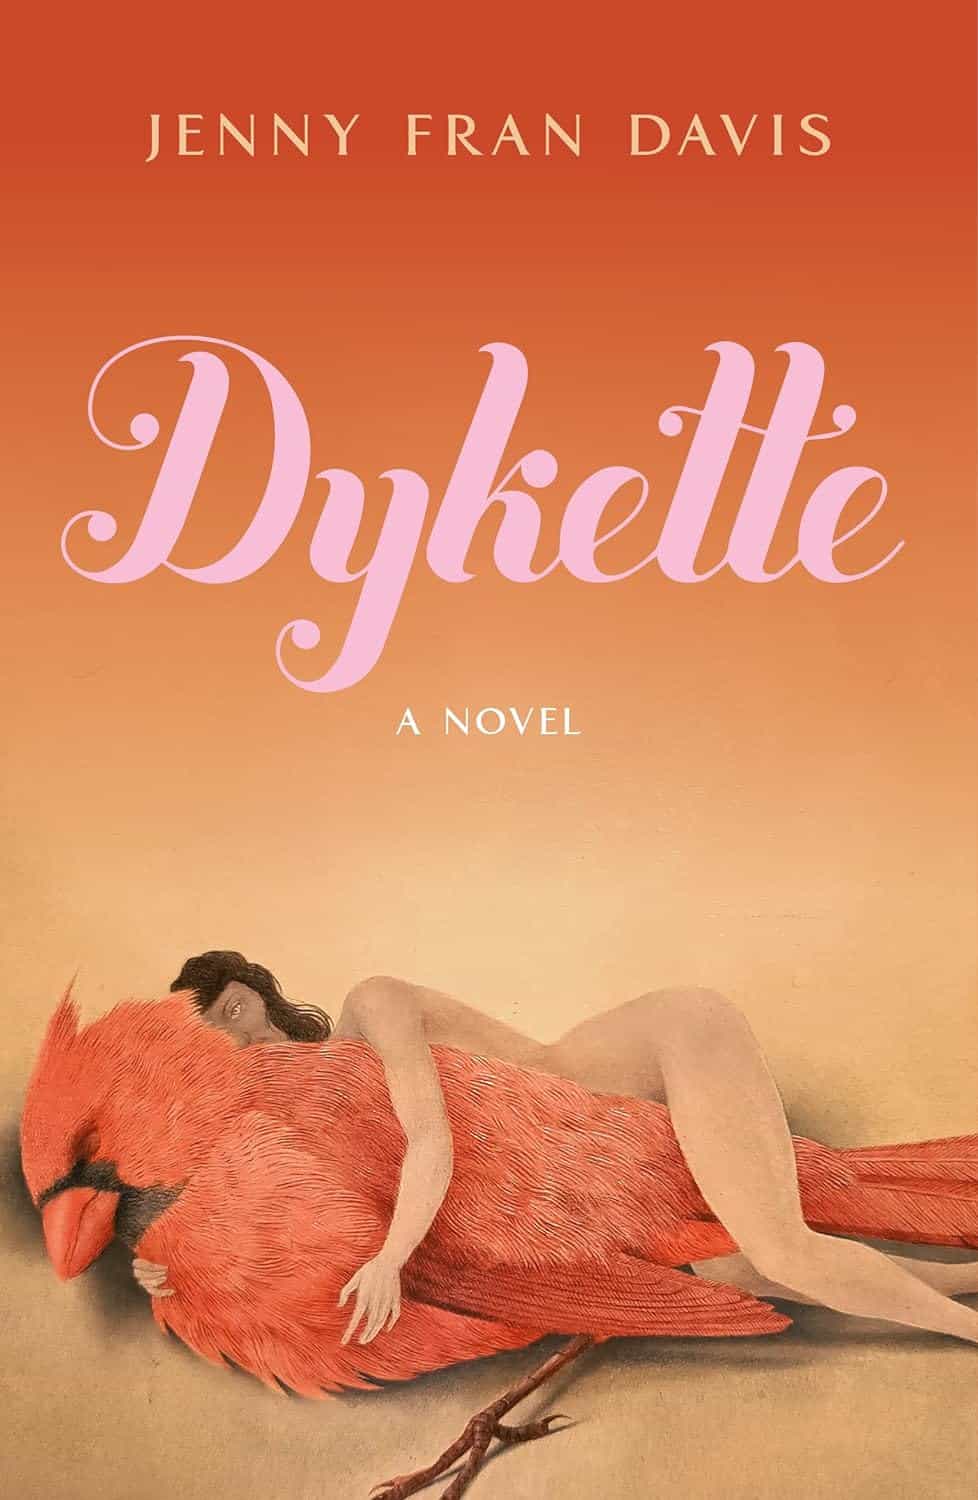 Dykette, by Jenny Fran Davis